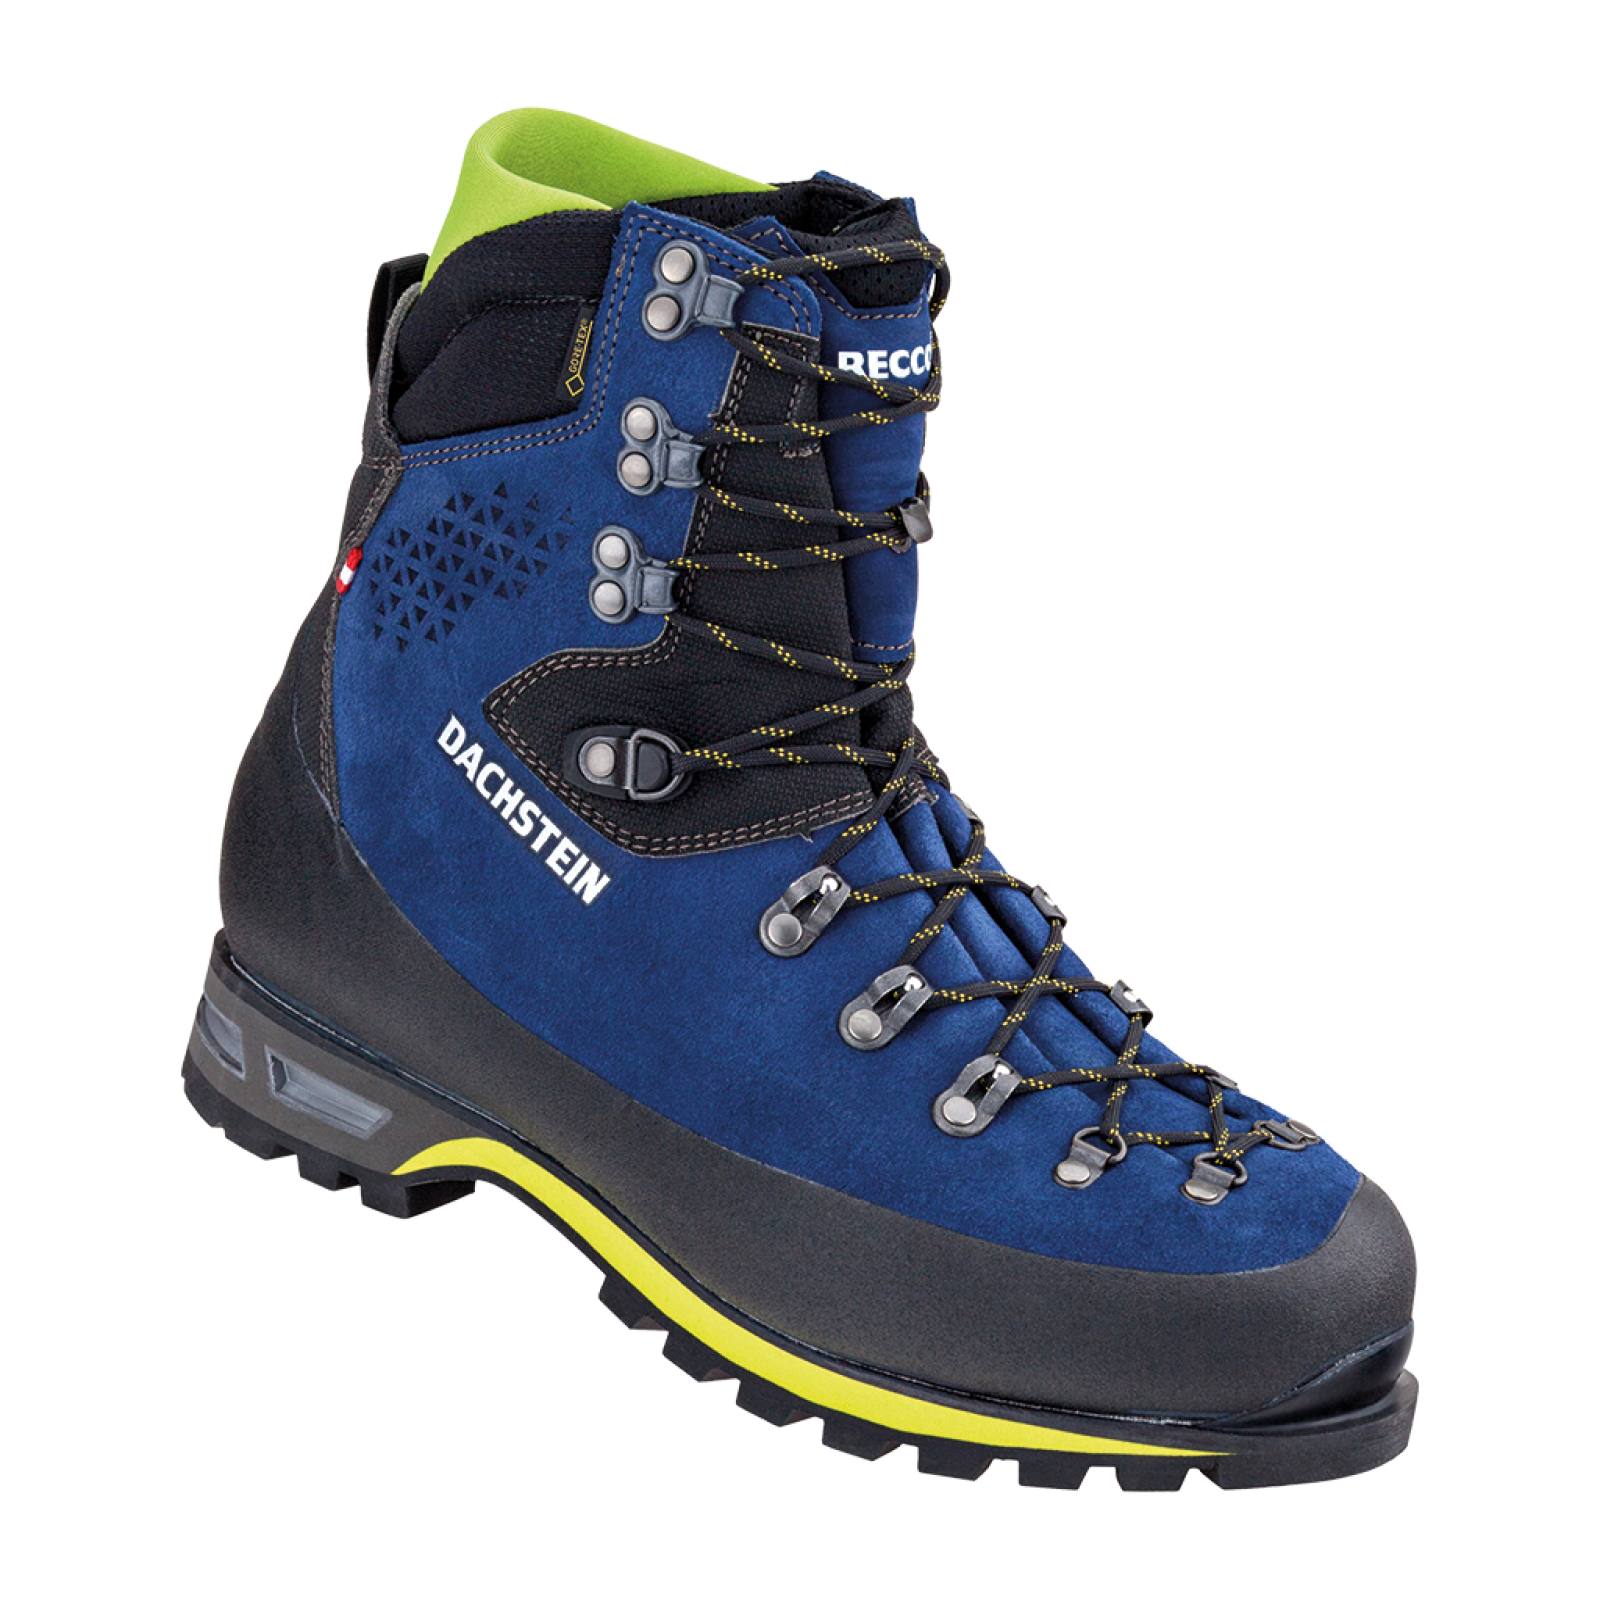 Dachstein Mont Blanc GTX - Mountaineering Boots - Men's